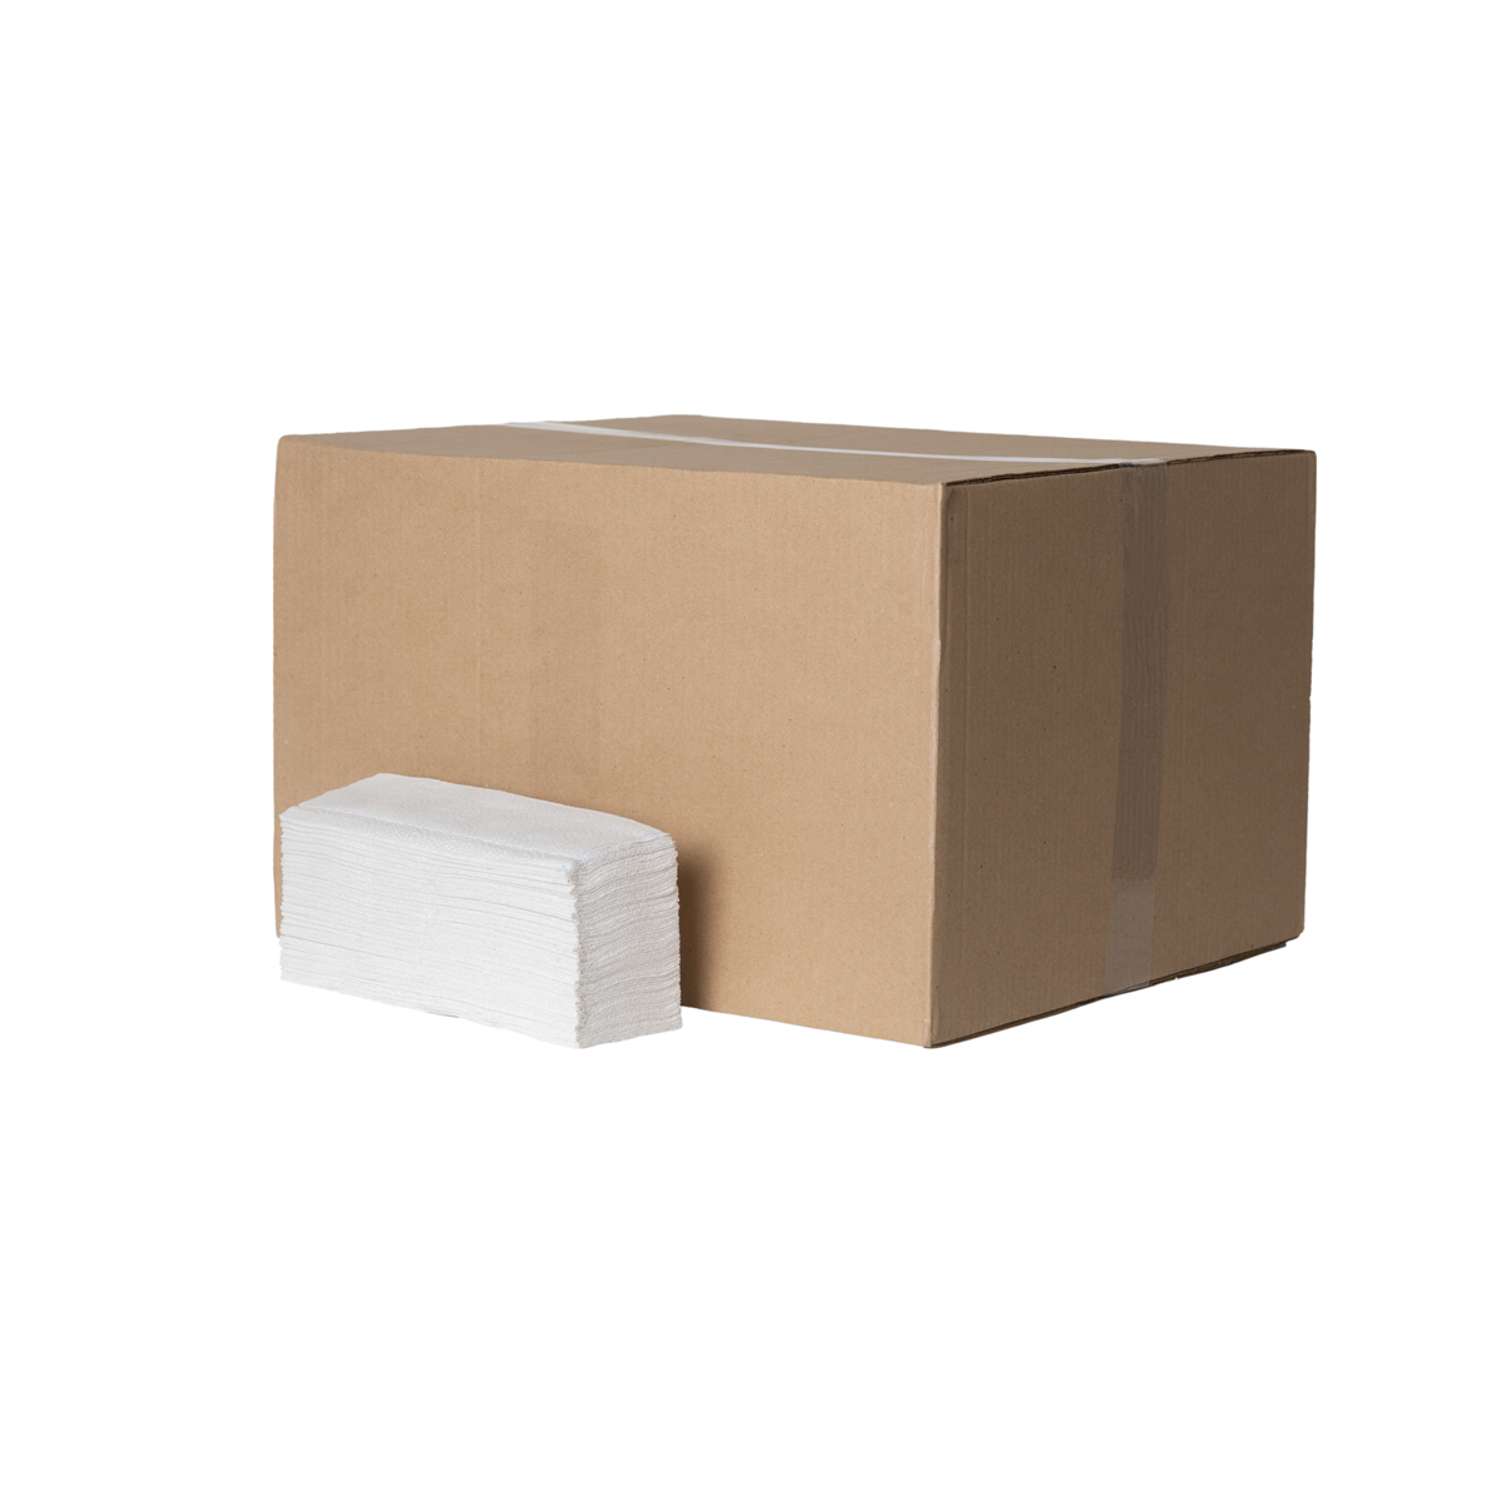 Полотенца бумажные Бумага Сити двухслойные Z сложение 200 листов в пачке система Н2/20 пачек в коробке - фото 1